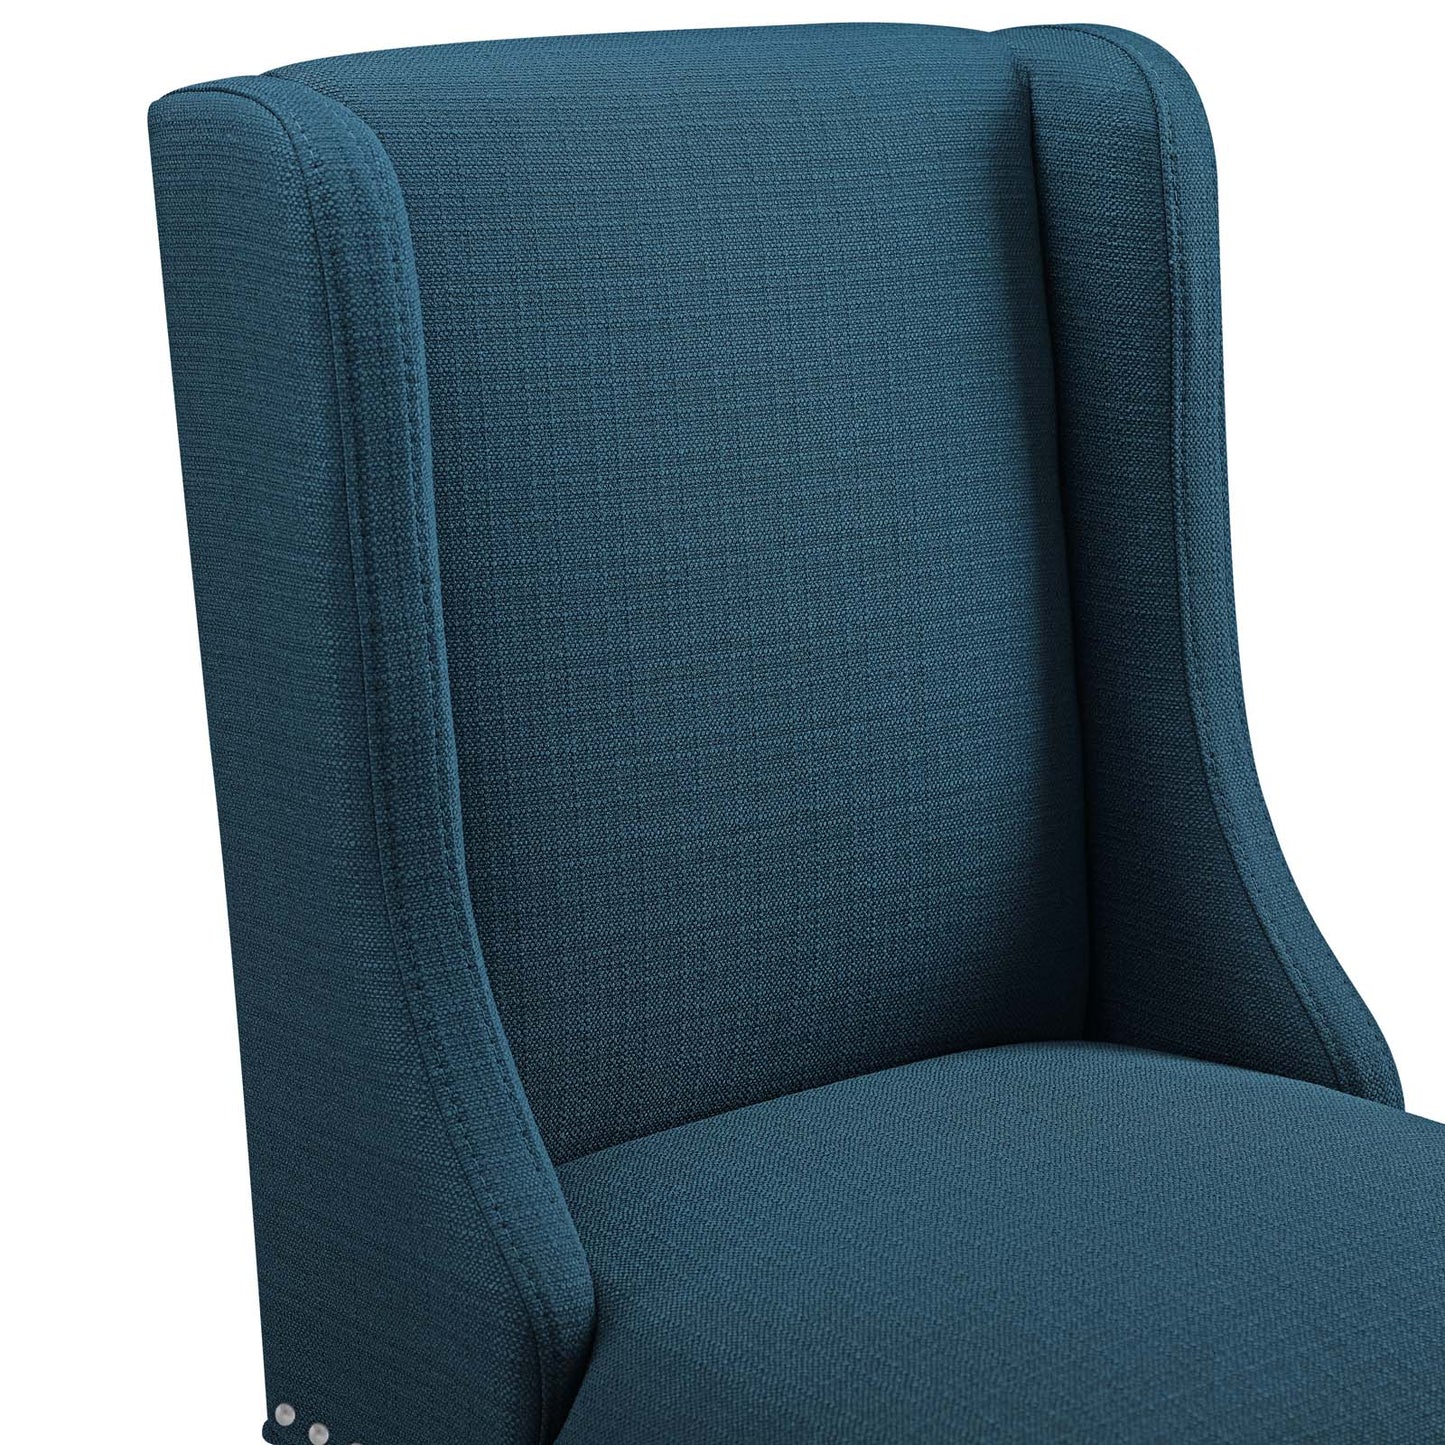 Baron Counter Stool Upholstered Fabric Set of 2 Azure EEI-4016-AZU